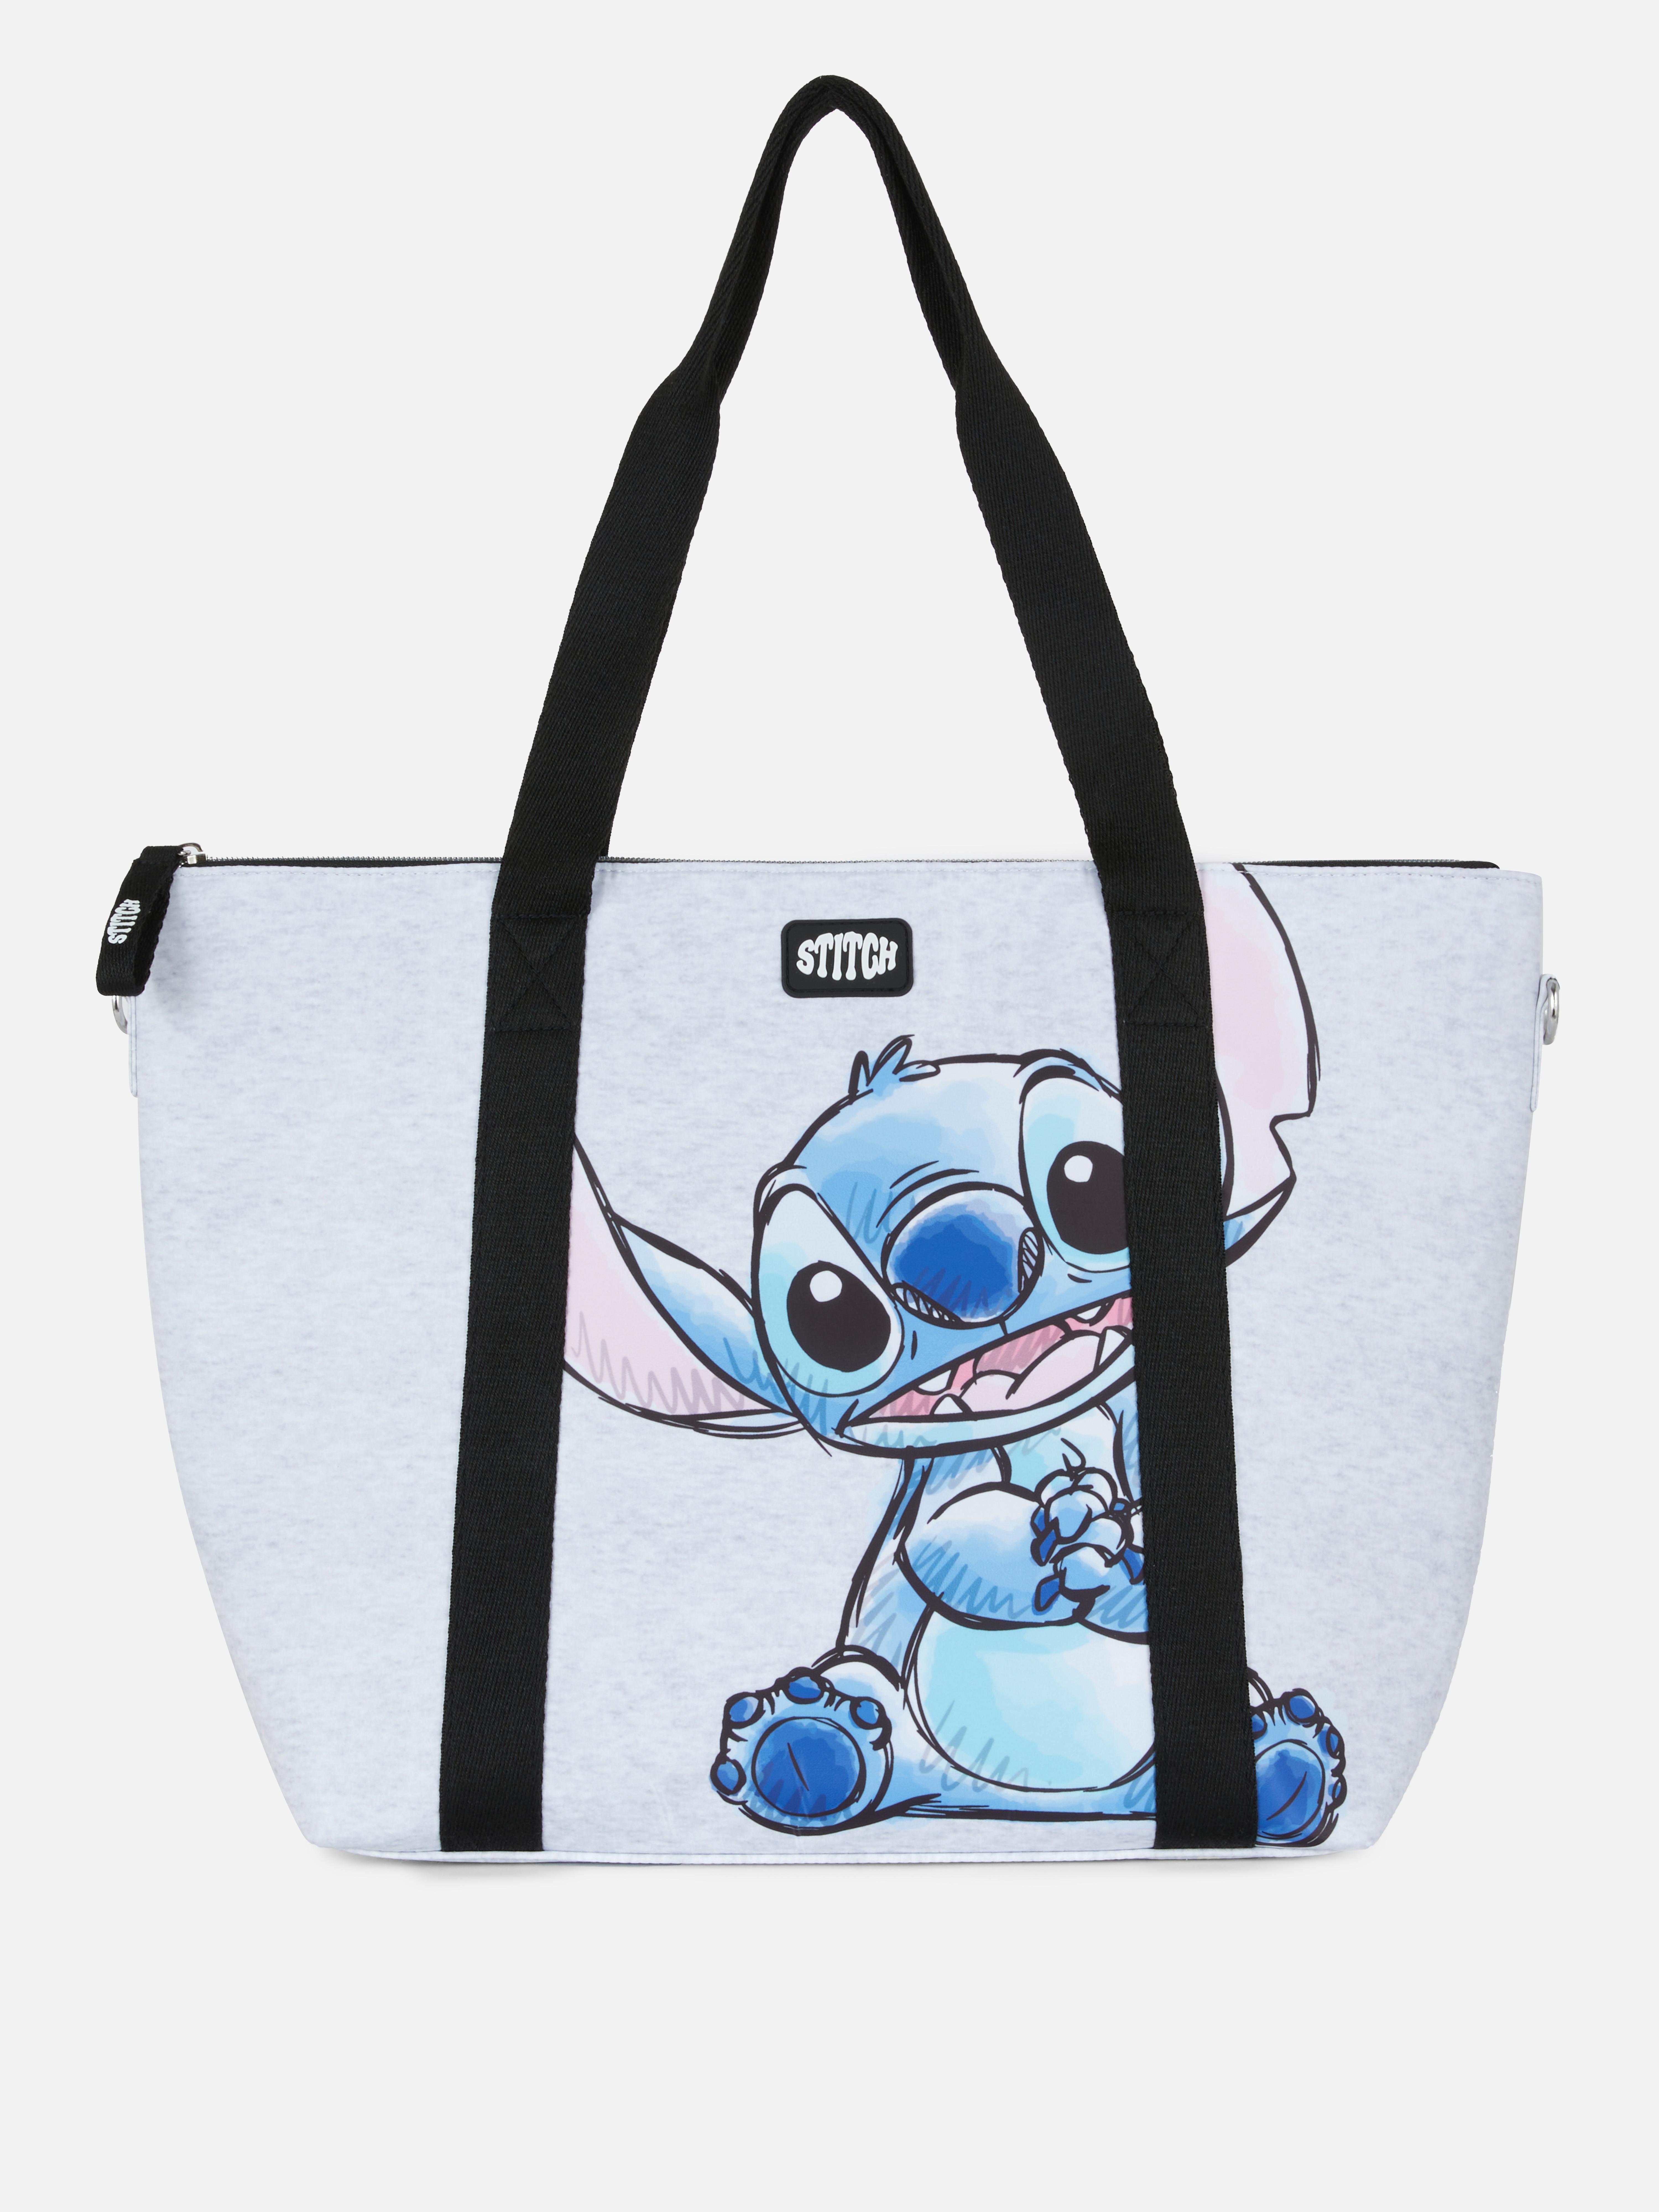 Disney’s Lilo & Stitch Tote Bag